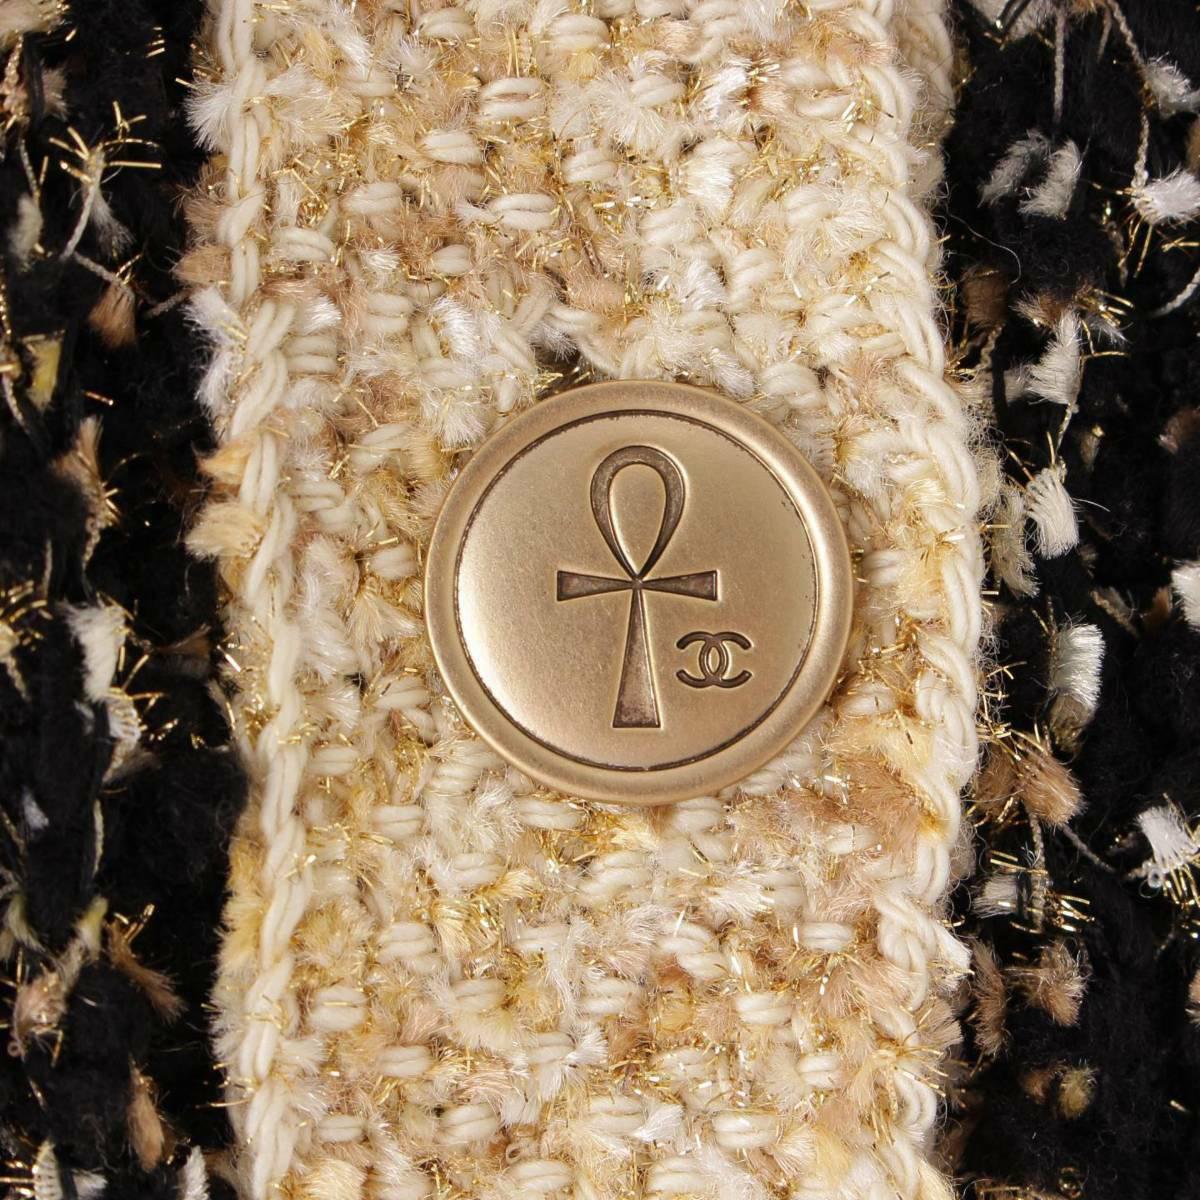 Absolut atemberaubend Chanel schwarz gewebt Lesage Tweed-Pullover aus Paris / EGYPT Collection 2019 Pre-Fasll Metiers d'Art
Preis auf e-bbay 4.500$
- CC-Logo Ägyptische Motive und Symbole Schaltflächen
- Edler Lesage-Tweed mit dezentem